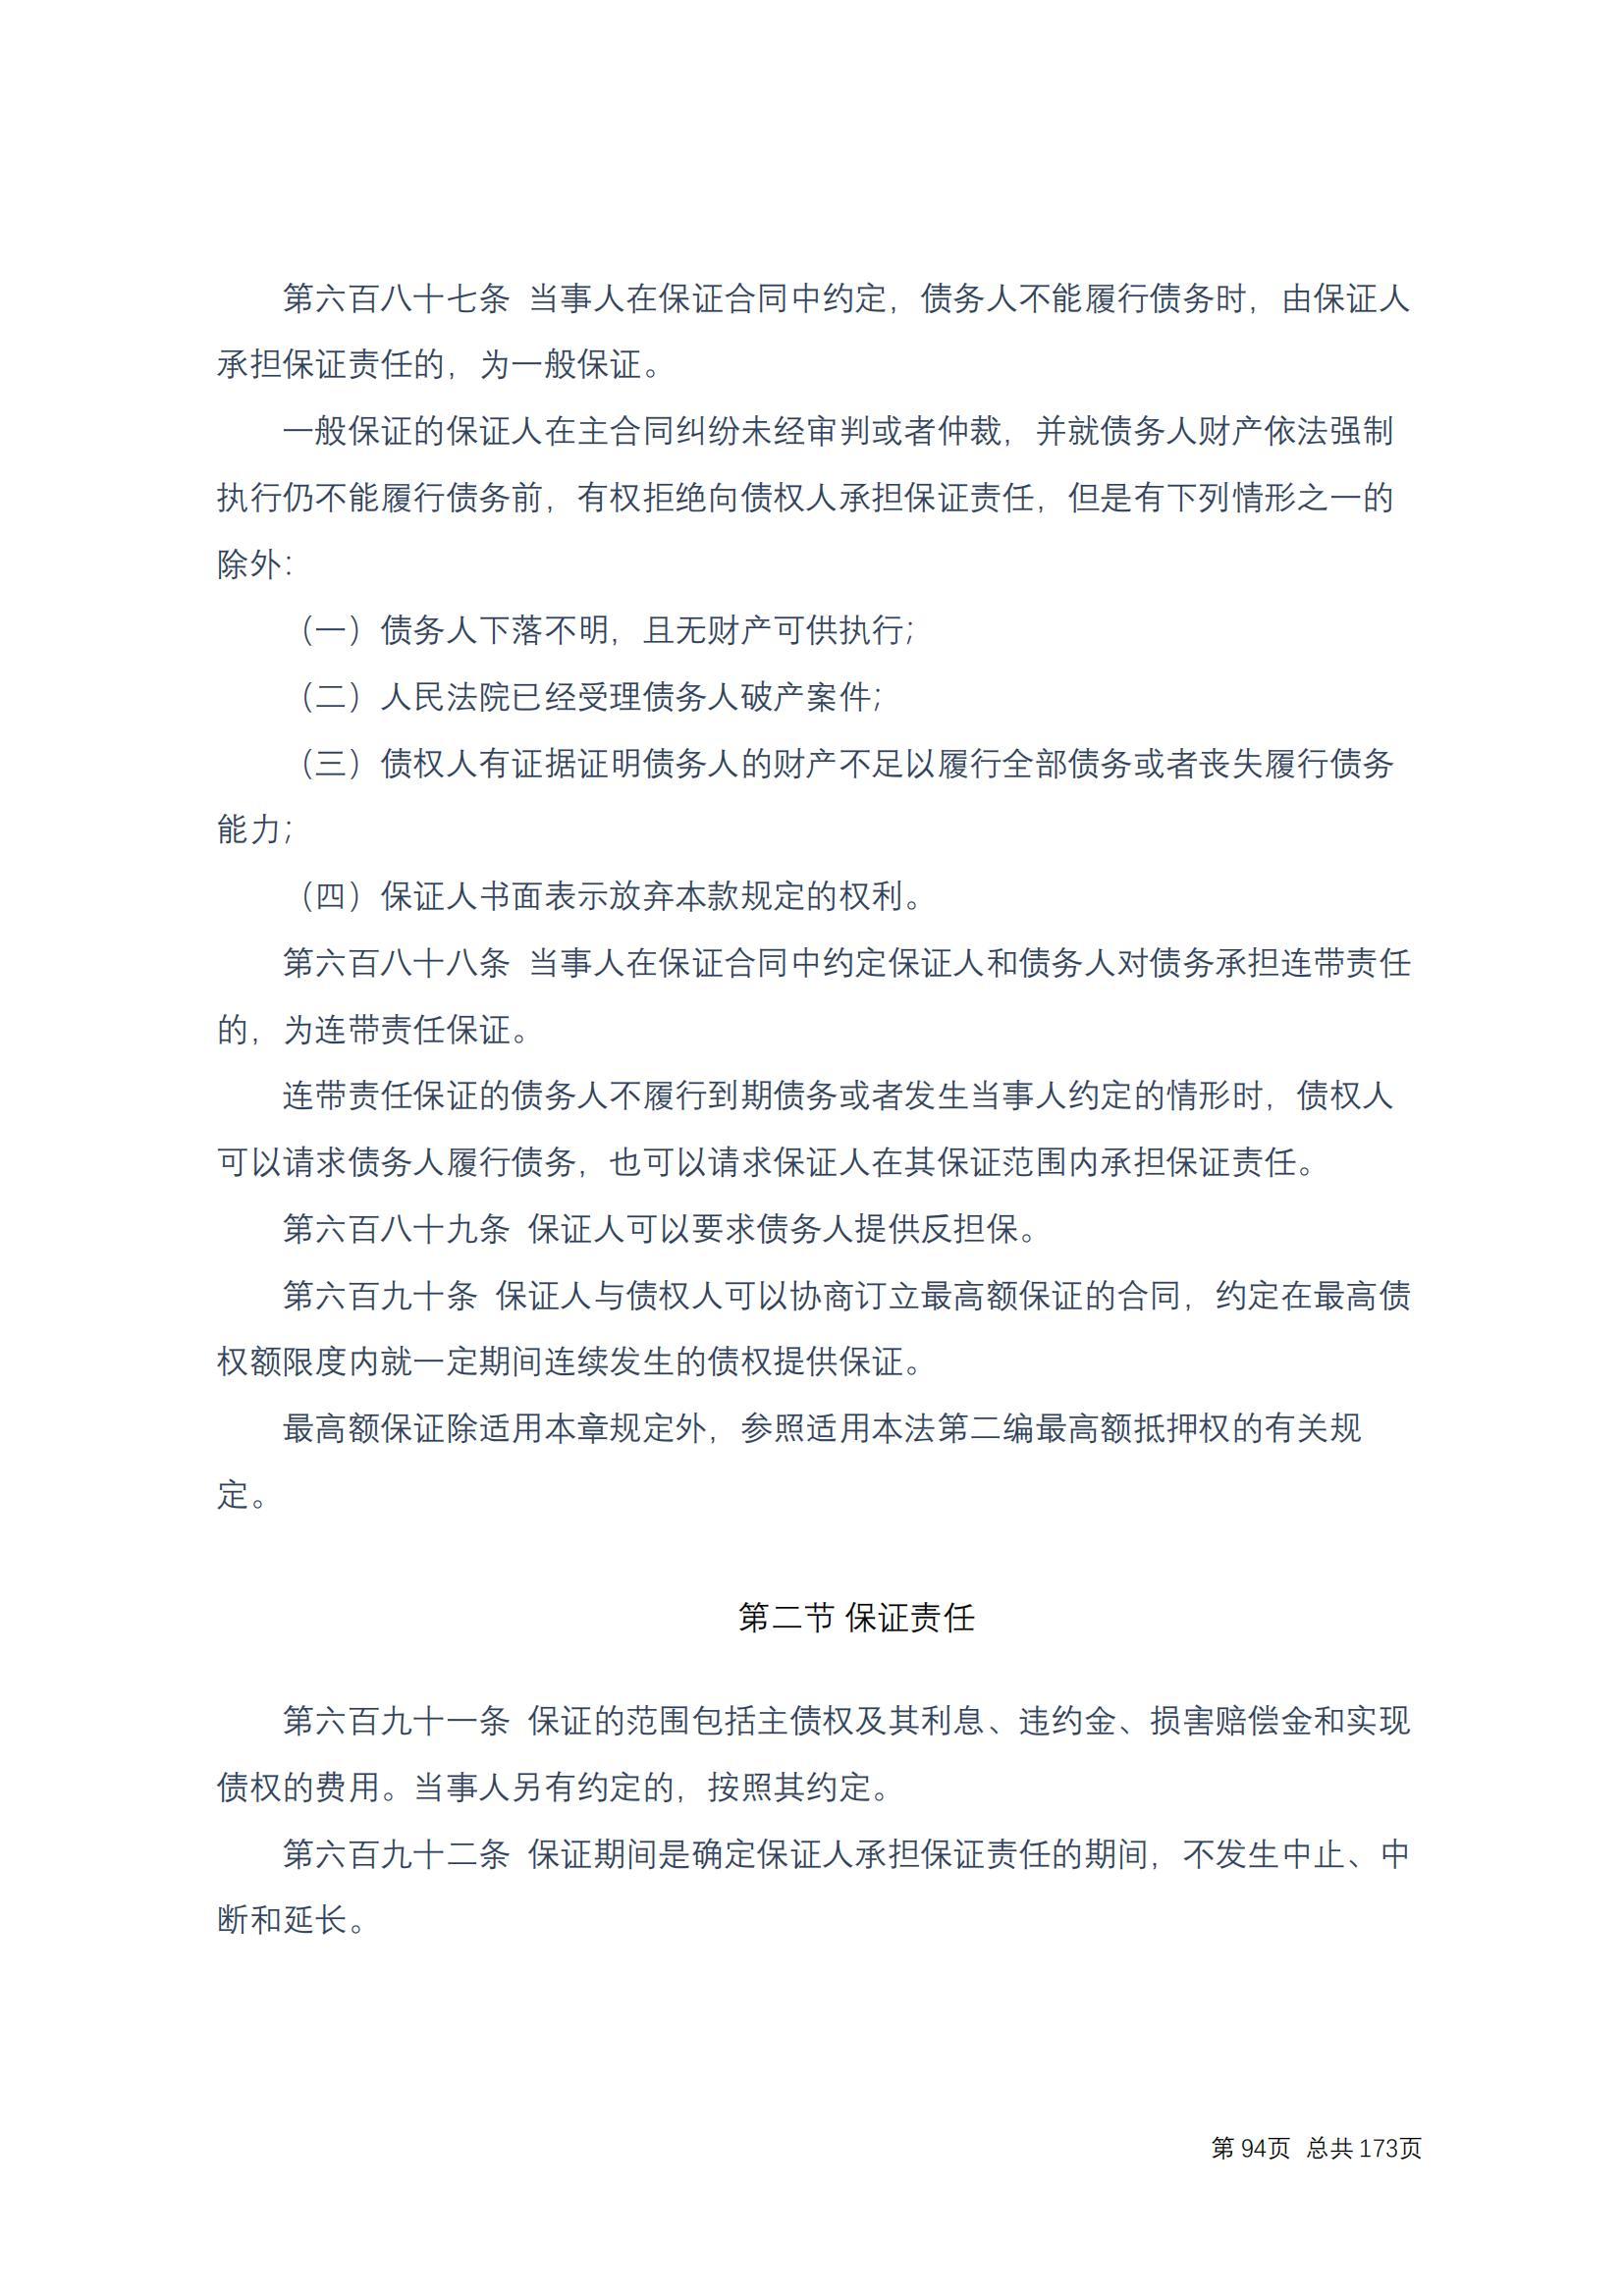 中华人民共和国民法典 修改过_93